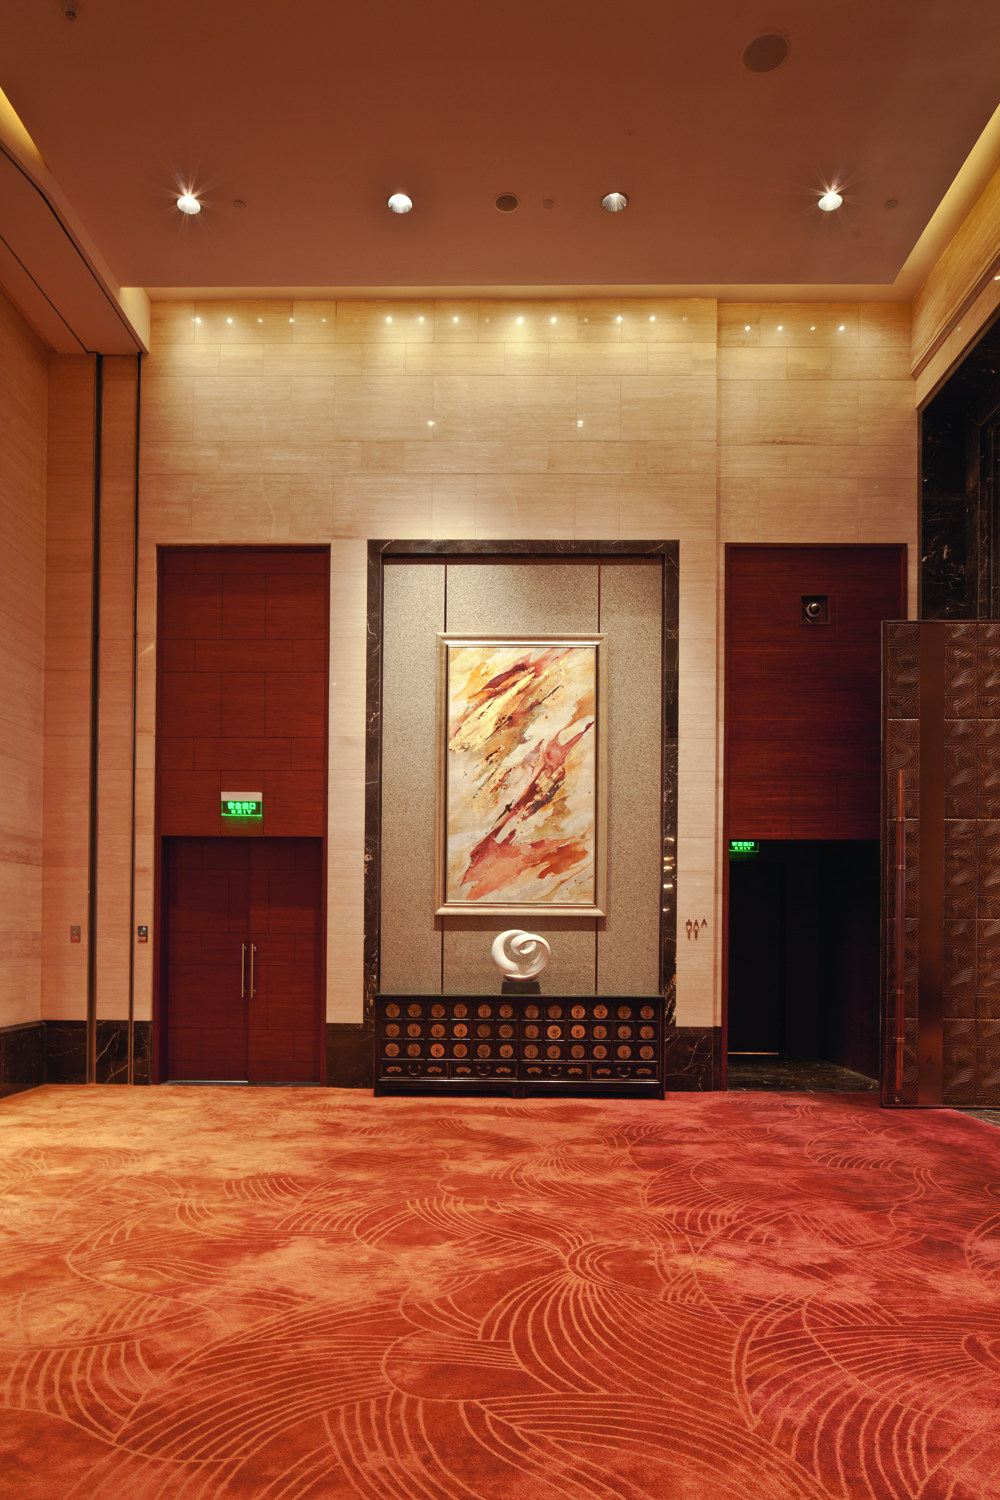 上海浦东嘉里大酒店( Kerry Hotel Pudong Shanghai)第12页更新__上海嘉里_0353.jpg